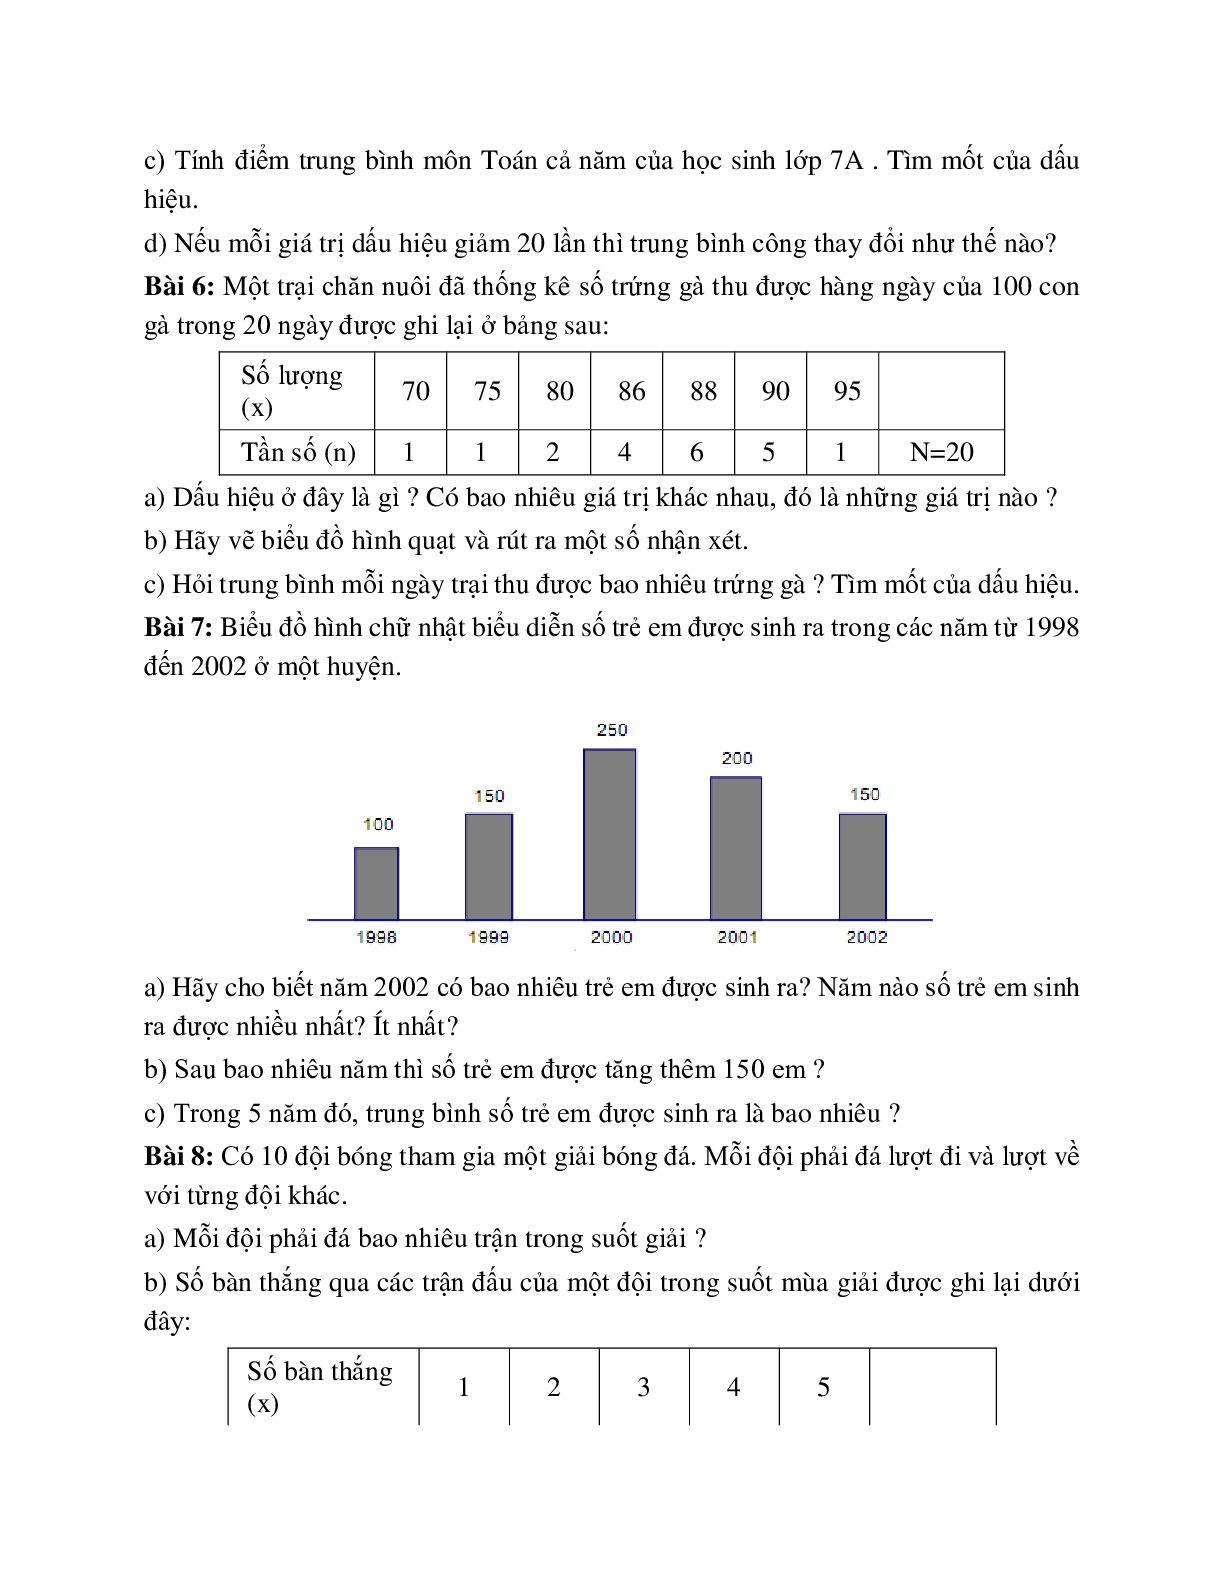 Cách giải Vẽ biểu đồ và tính giá trị trung bình cộng và tìm mod của số liệu (trang 5)